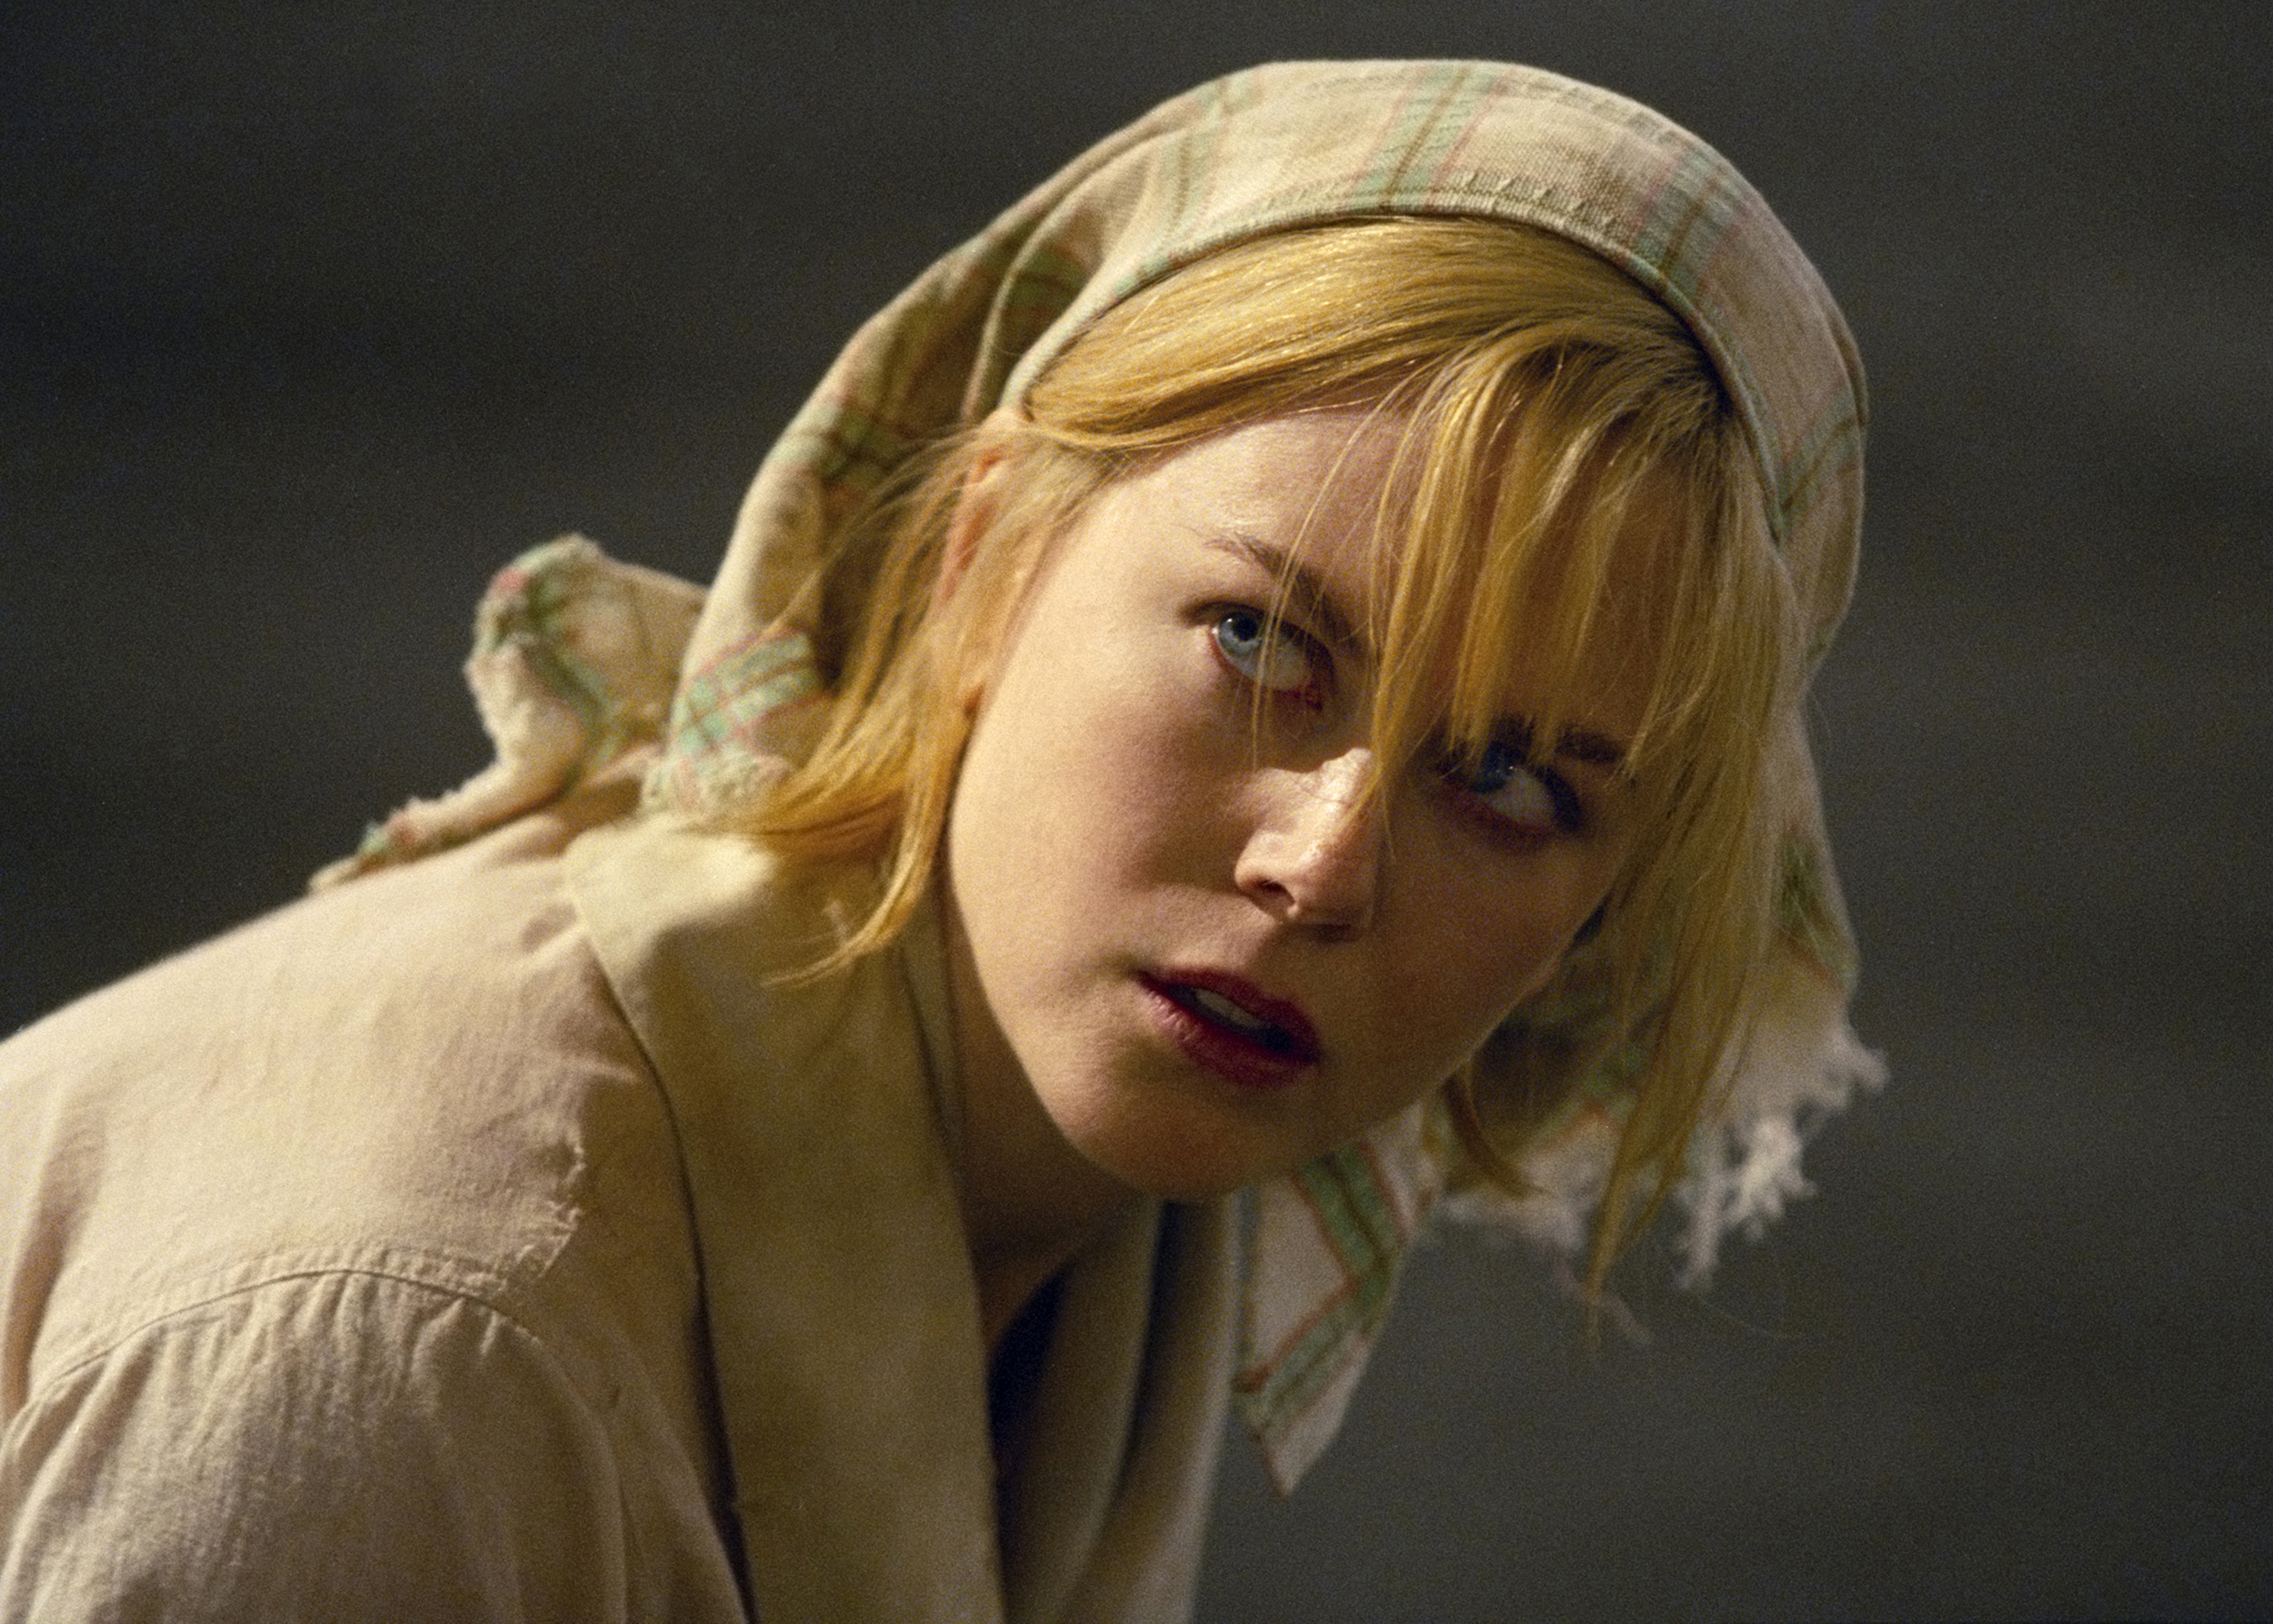 Nicole Kidman dans le rôle de Grace Margaret Mulligan dans "Dogville", réalisé par Lars Von Trier à Trollhättan, Suède en 2002. | Source : Getty Images